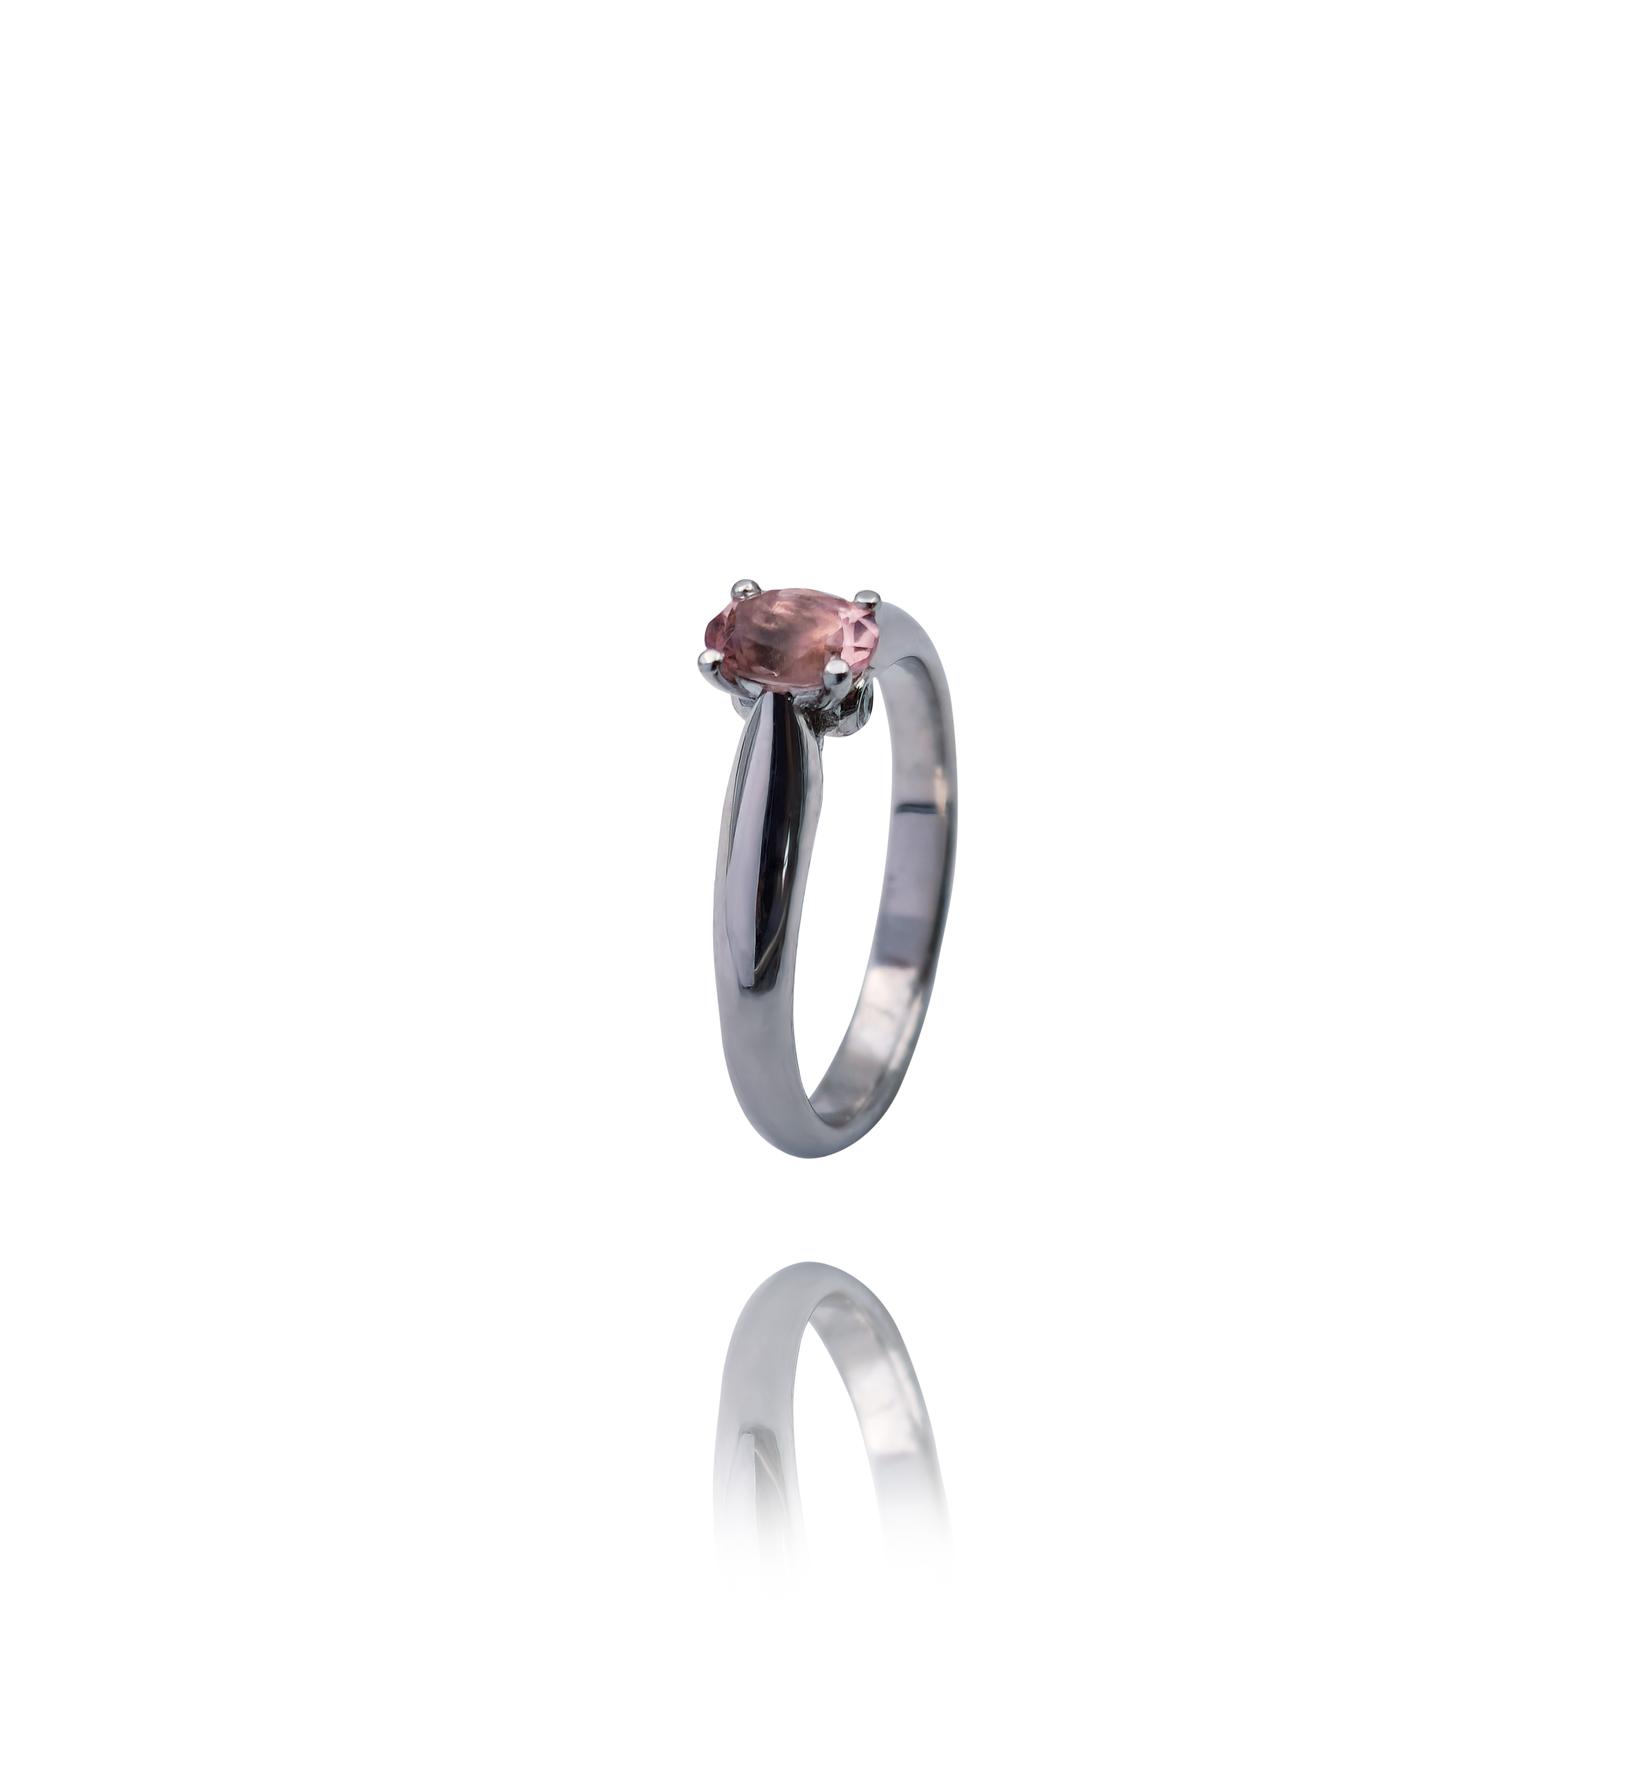 Selected image for Ženski prsten od Belog zlata sa Brilijantima i Morganitom, 585, 12mm